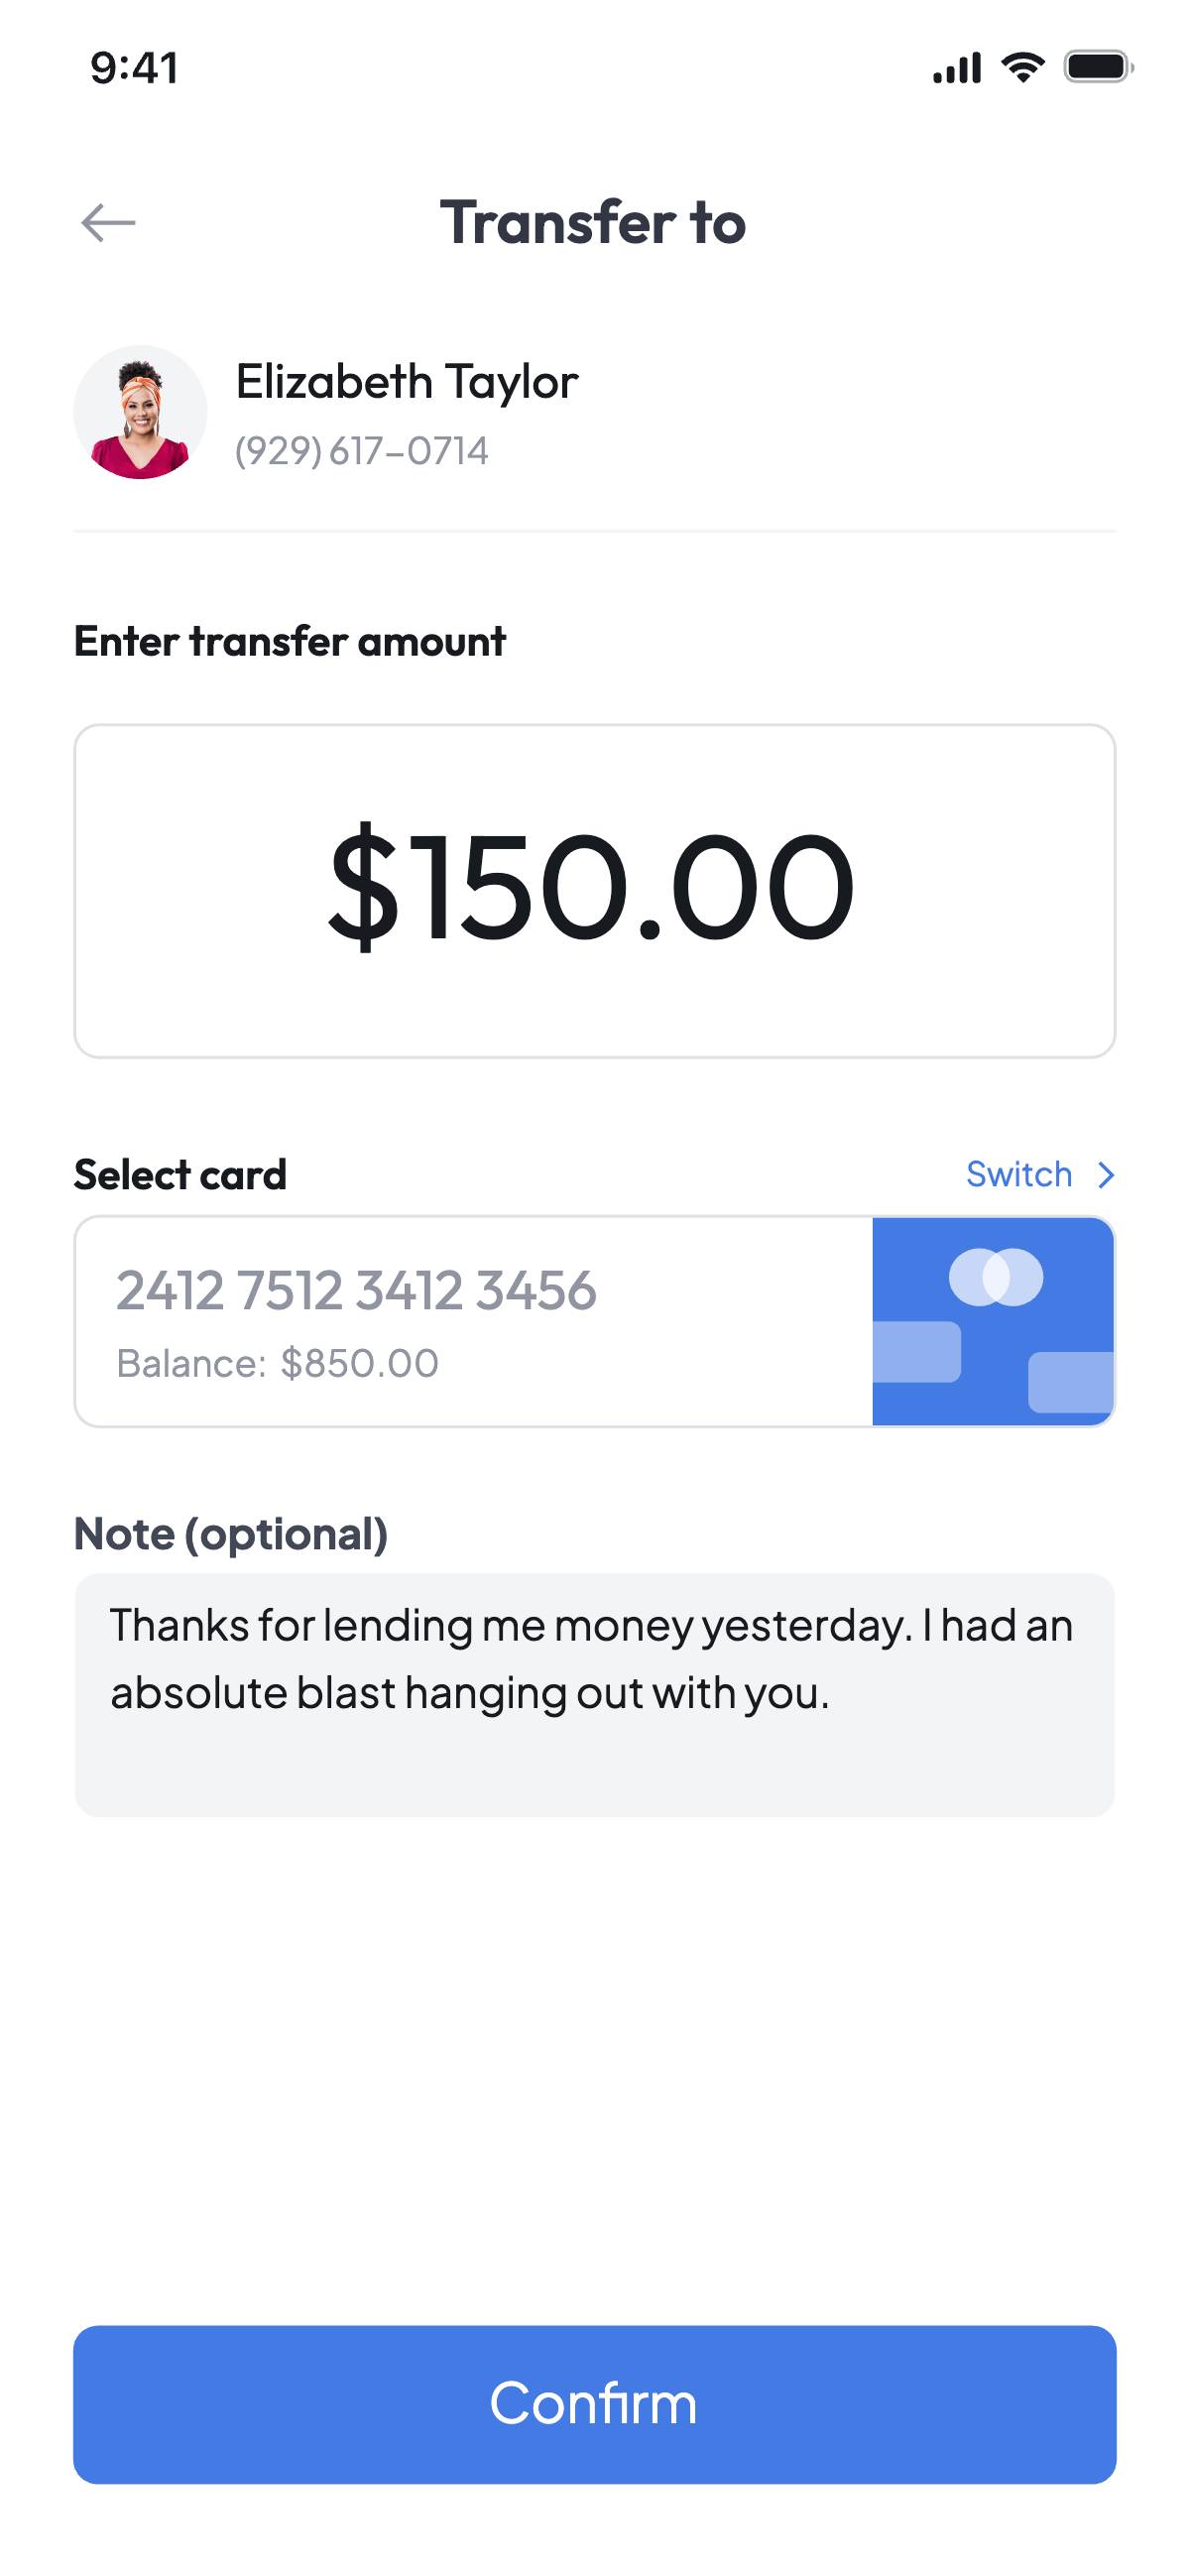 Transfer money - Input a message